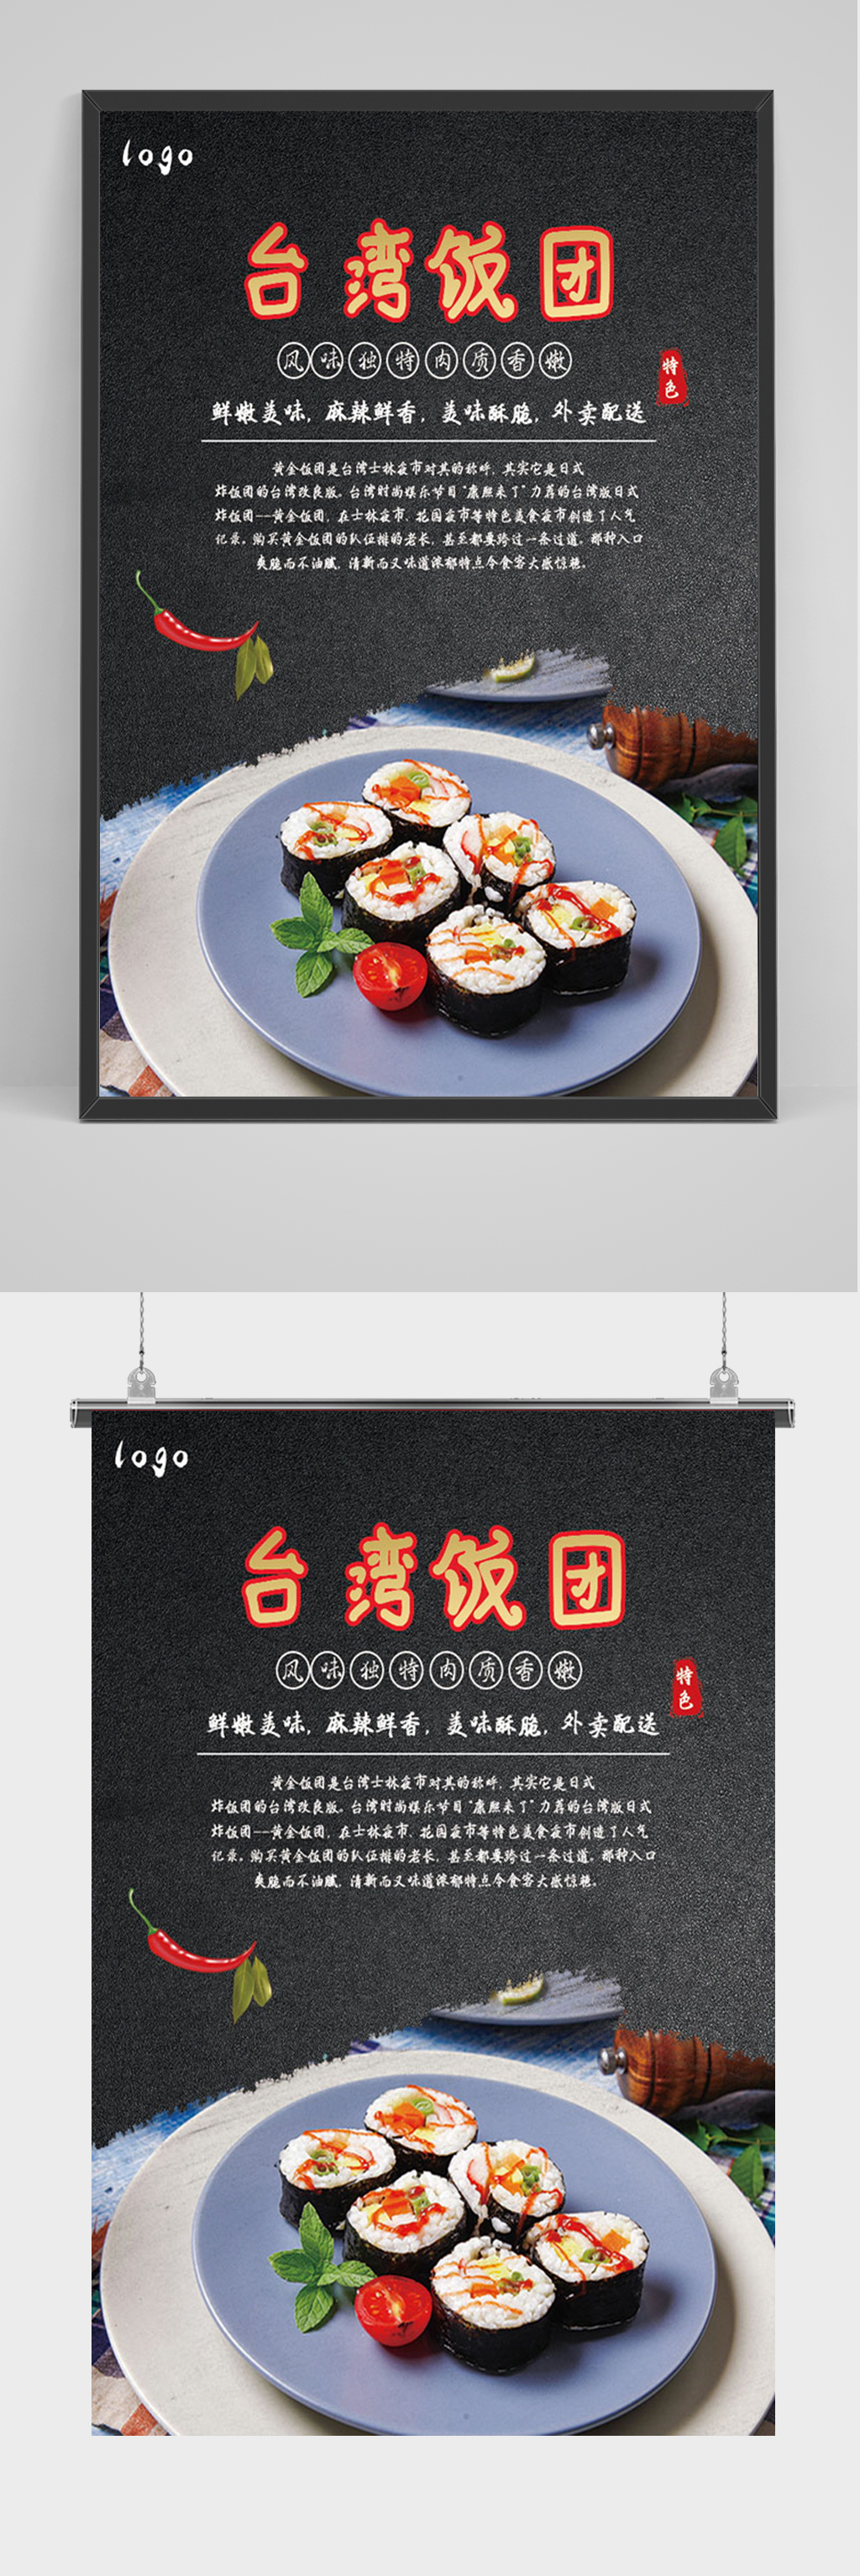 日式料理寿司促销海报